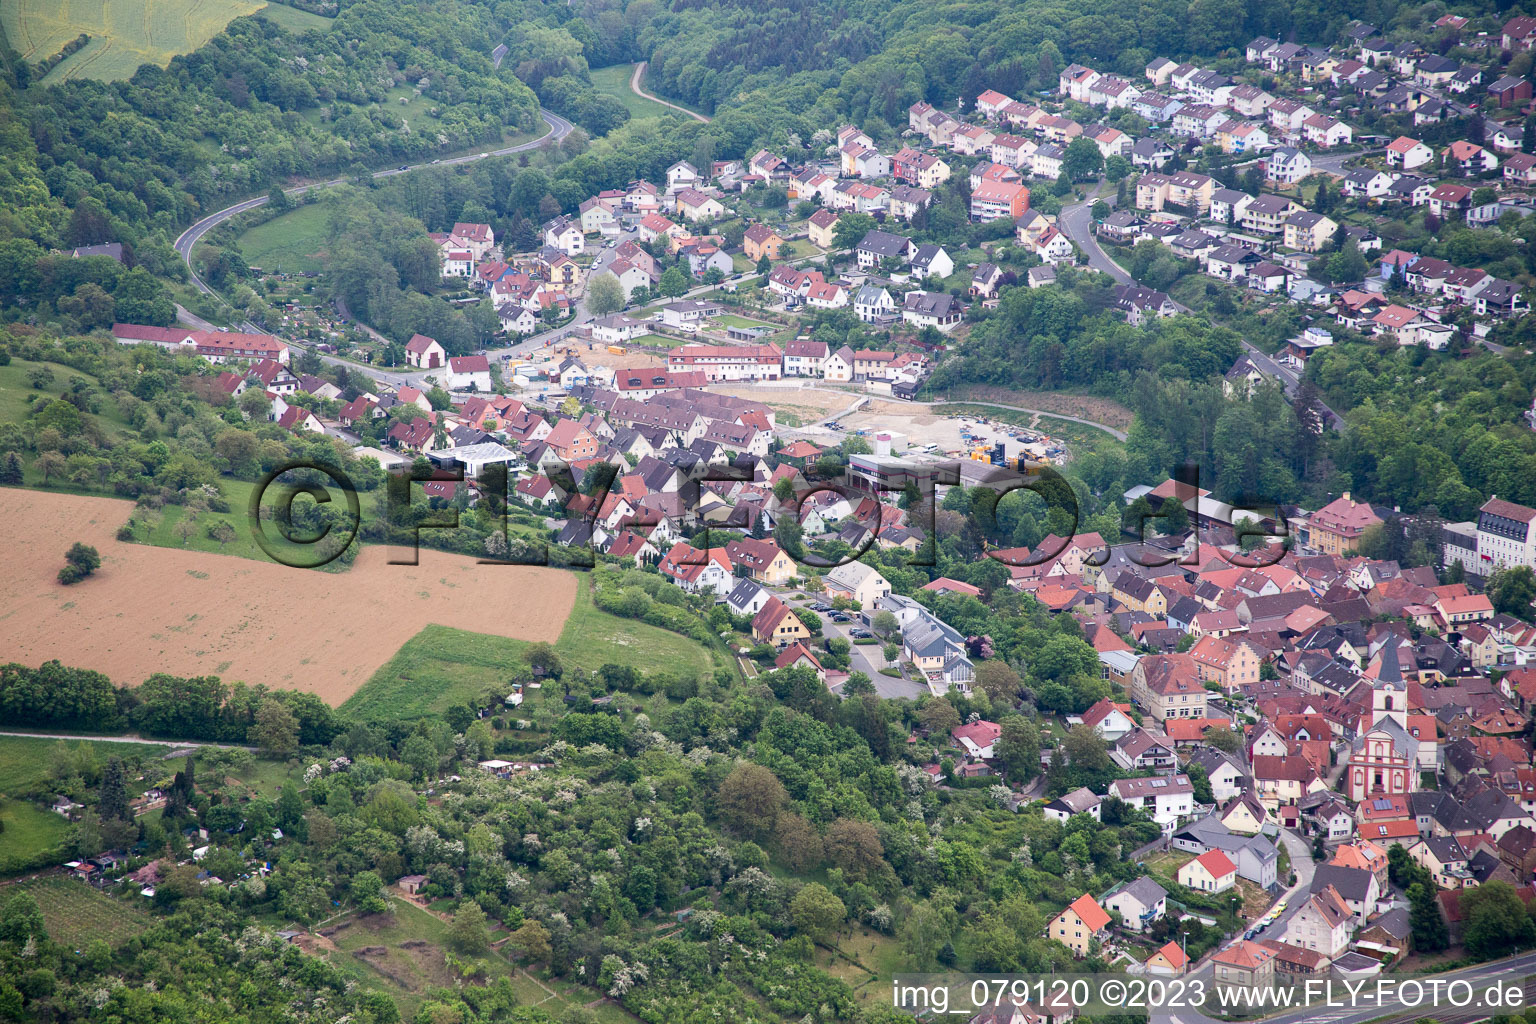 Schonungen dans le département Bavière, Allemagne du point de vue du drone